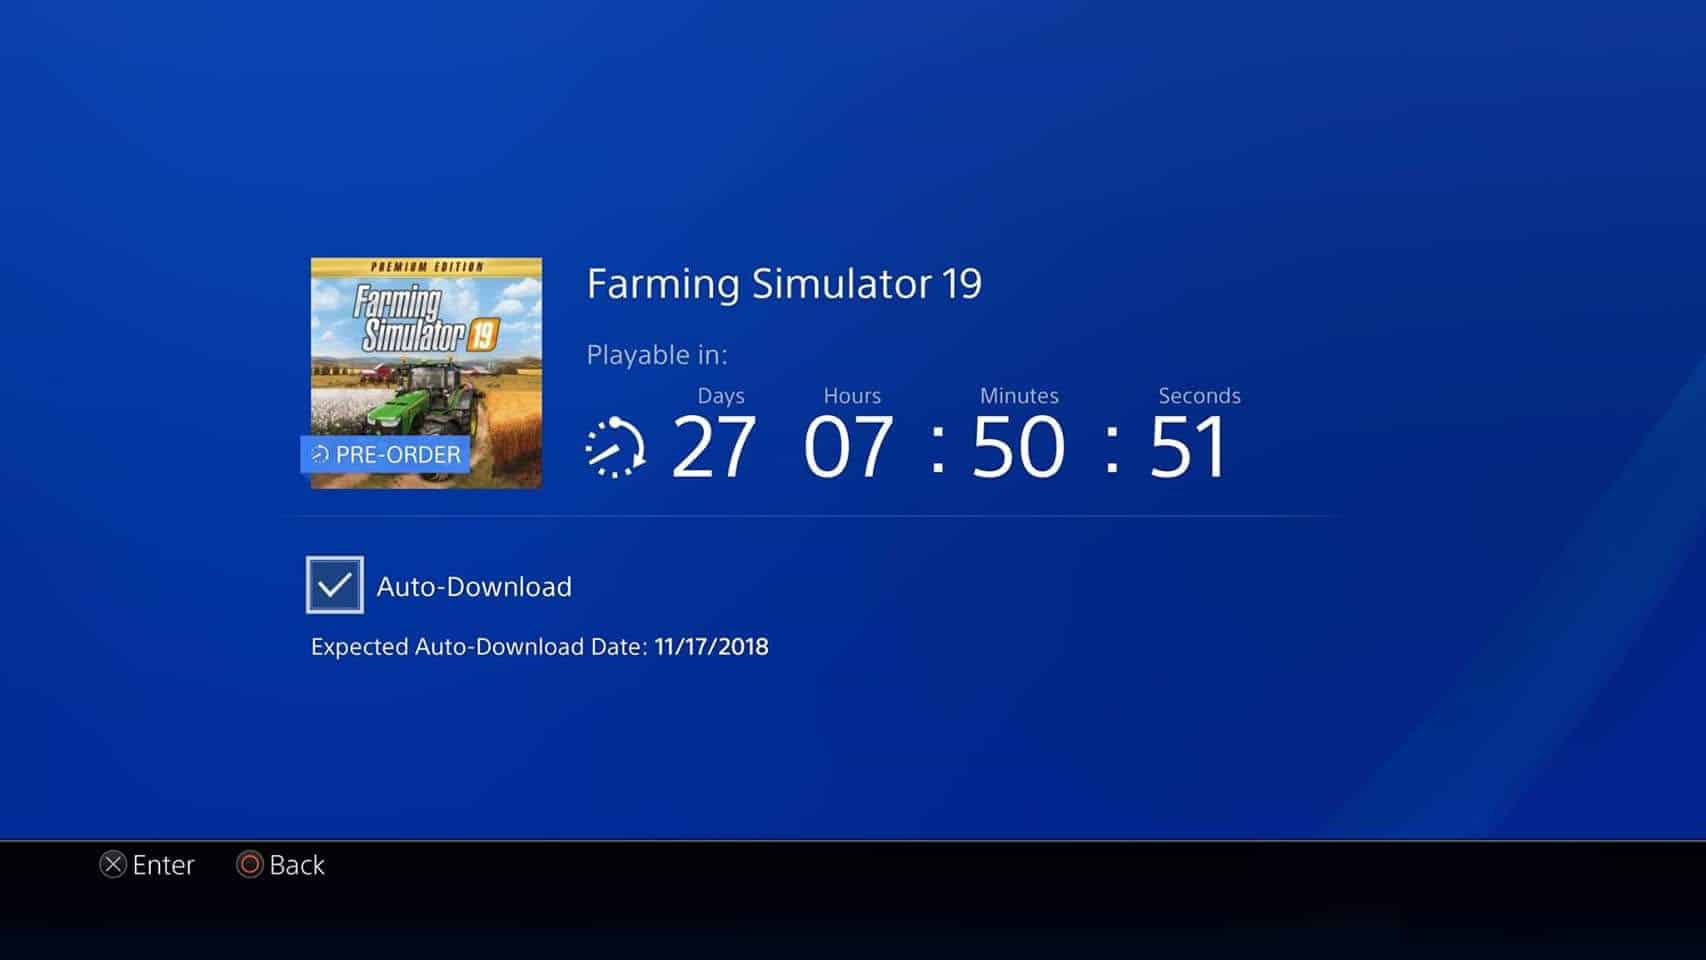 Landwirtschafts-Simulator 19: Premium Edition PlayStation 4